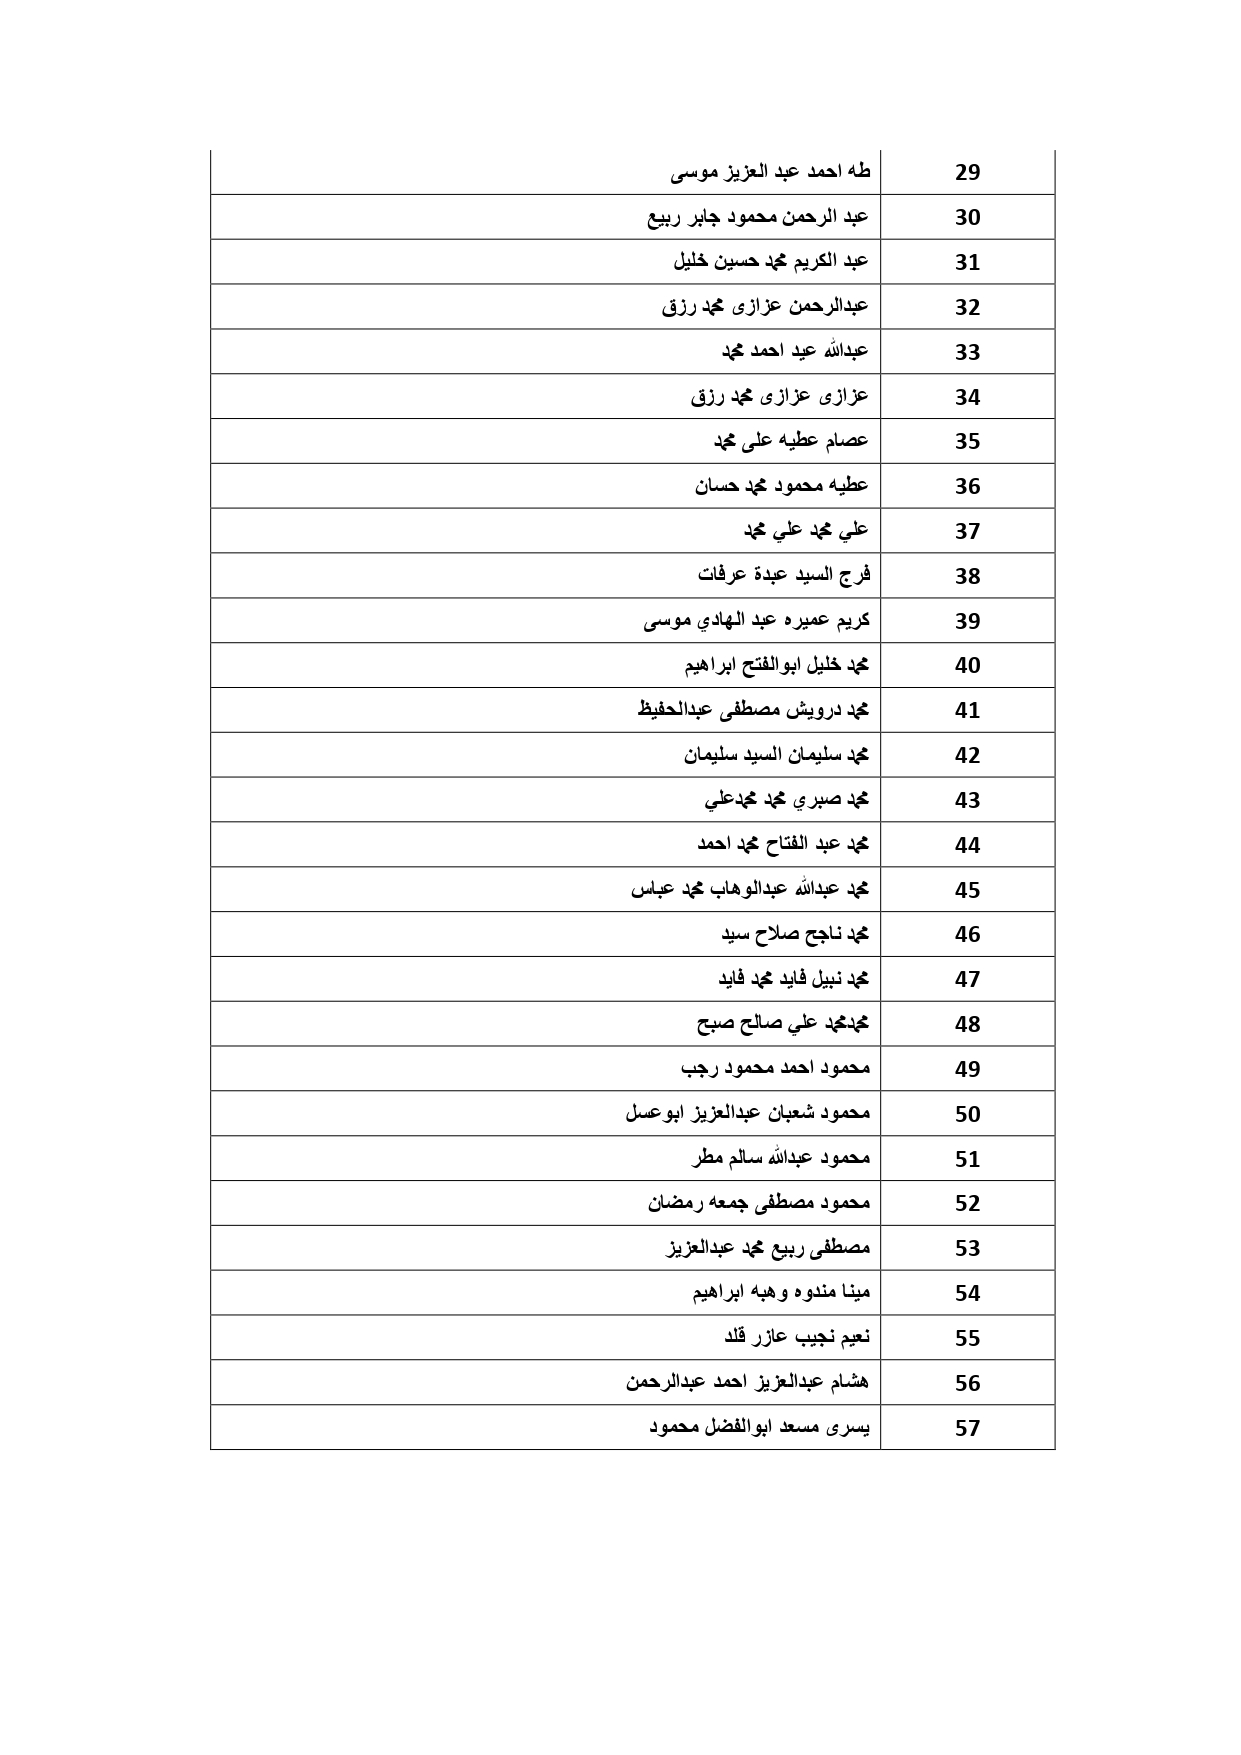 القائمة 65 لعدد 57 مواطن في 13 يناير 2022_page-0002